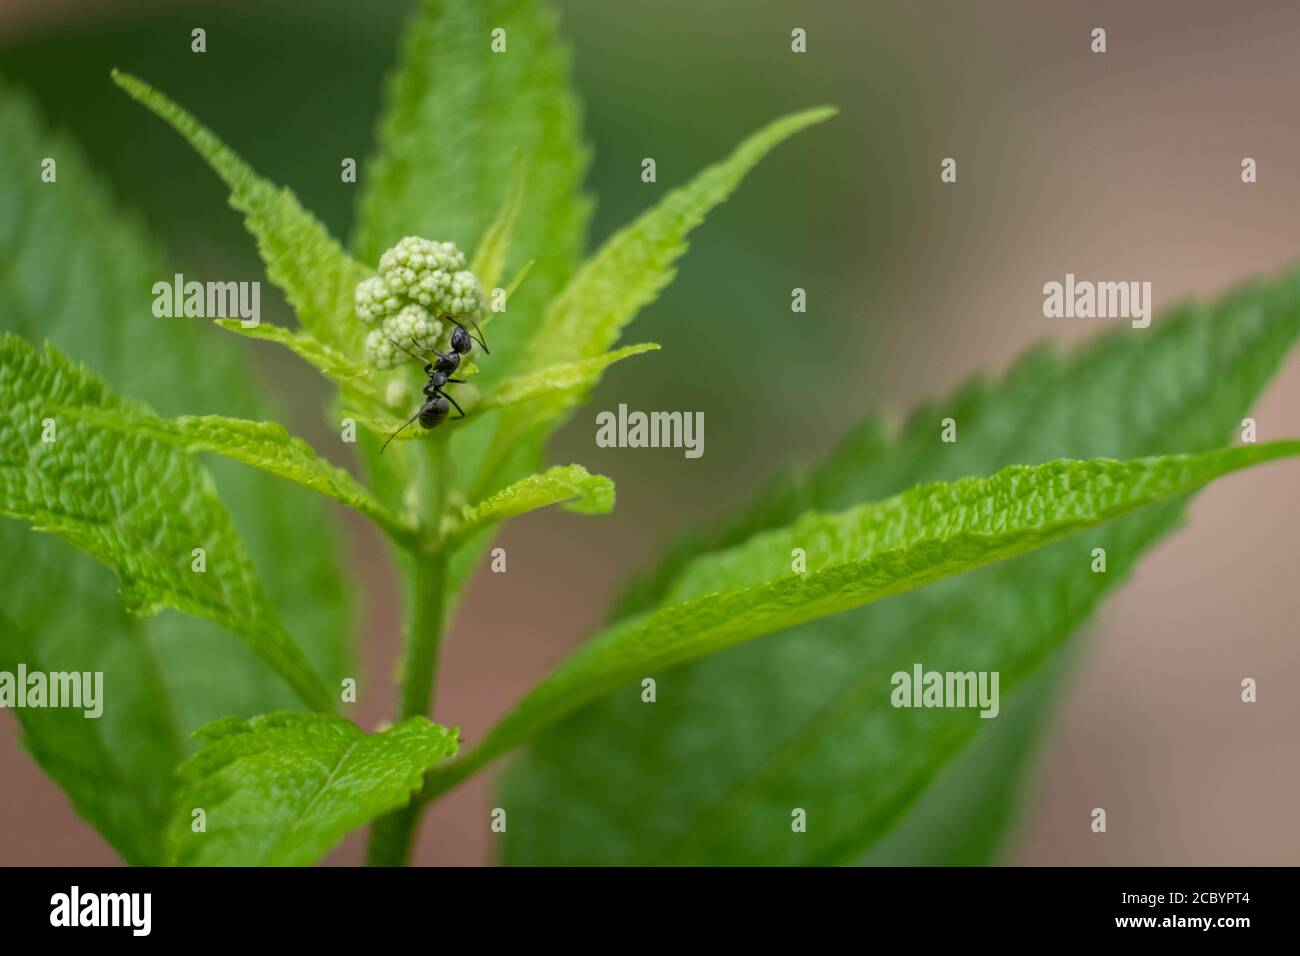 Una specie di formicina formica si arrampica su un bocciolo di fiori di una lussureggiante pianta verde. Foto Stock